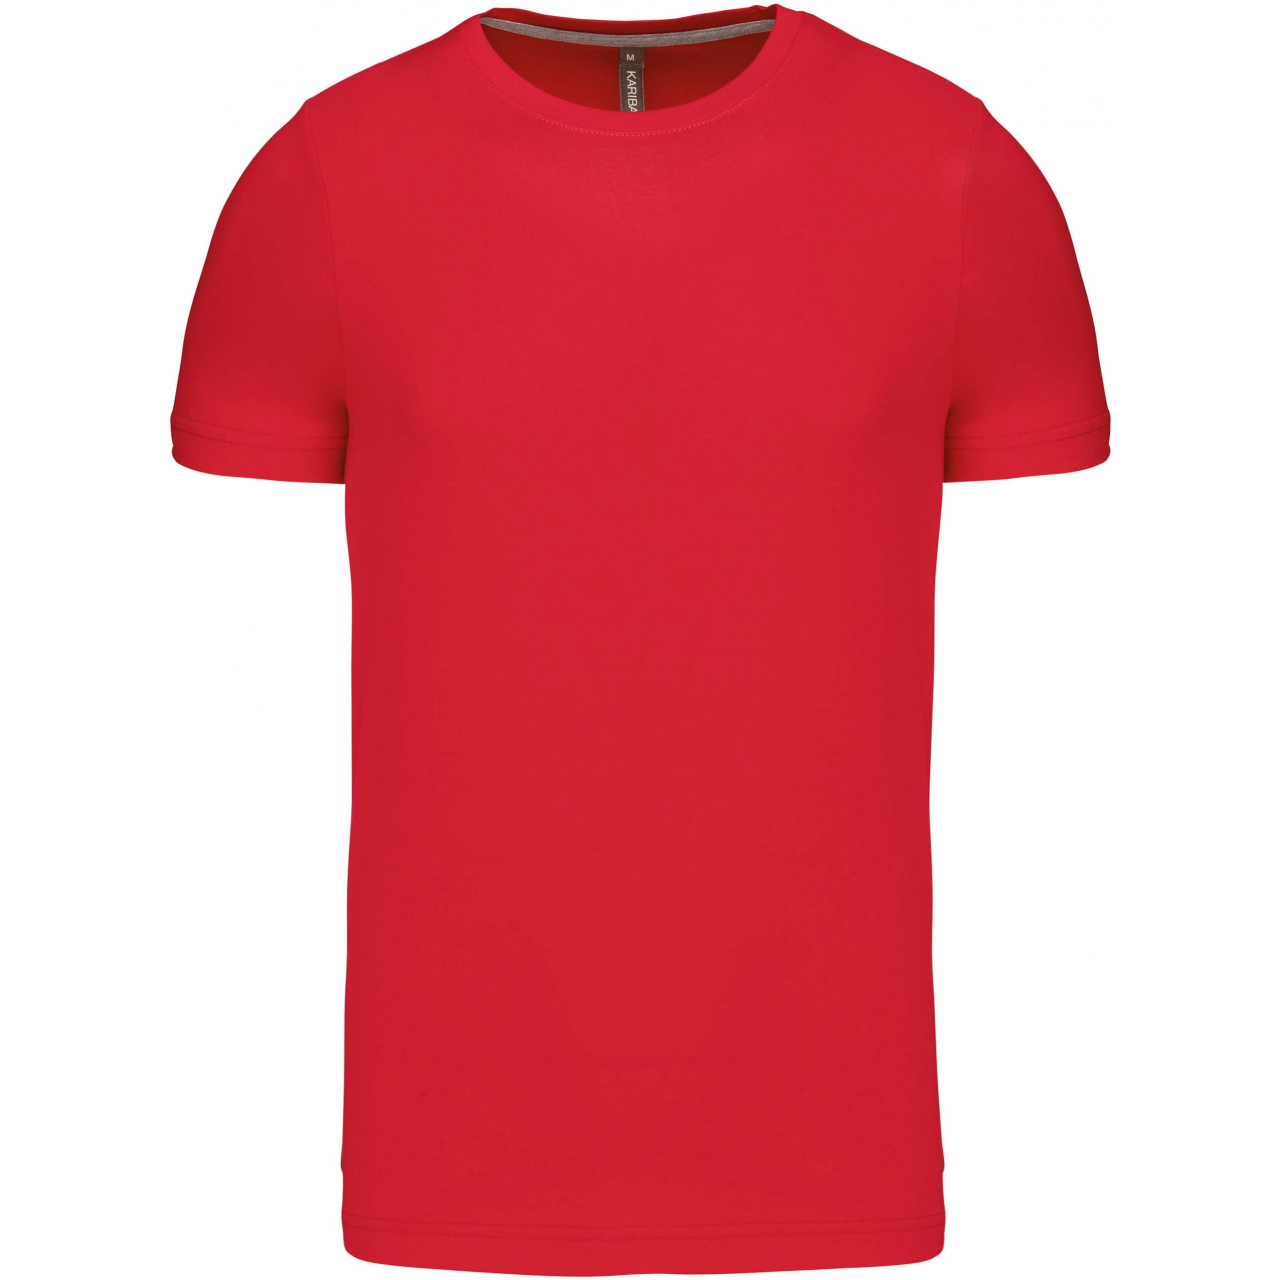 Pánské tričko Kariban krátký rukáv - červené, XL